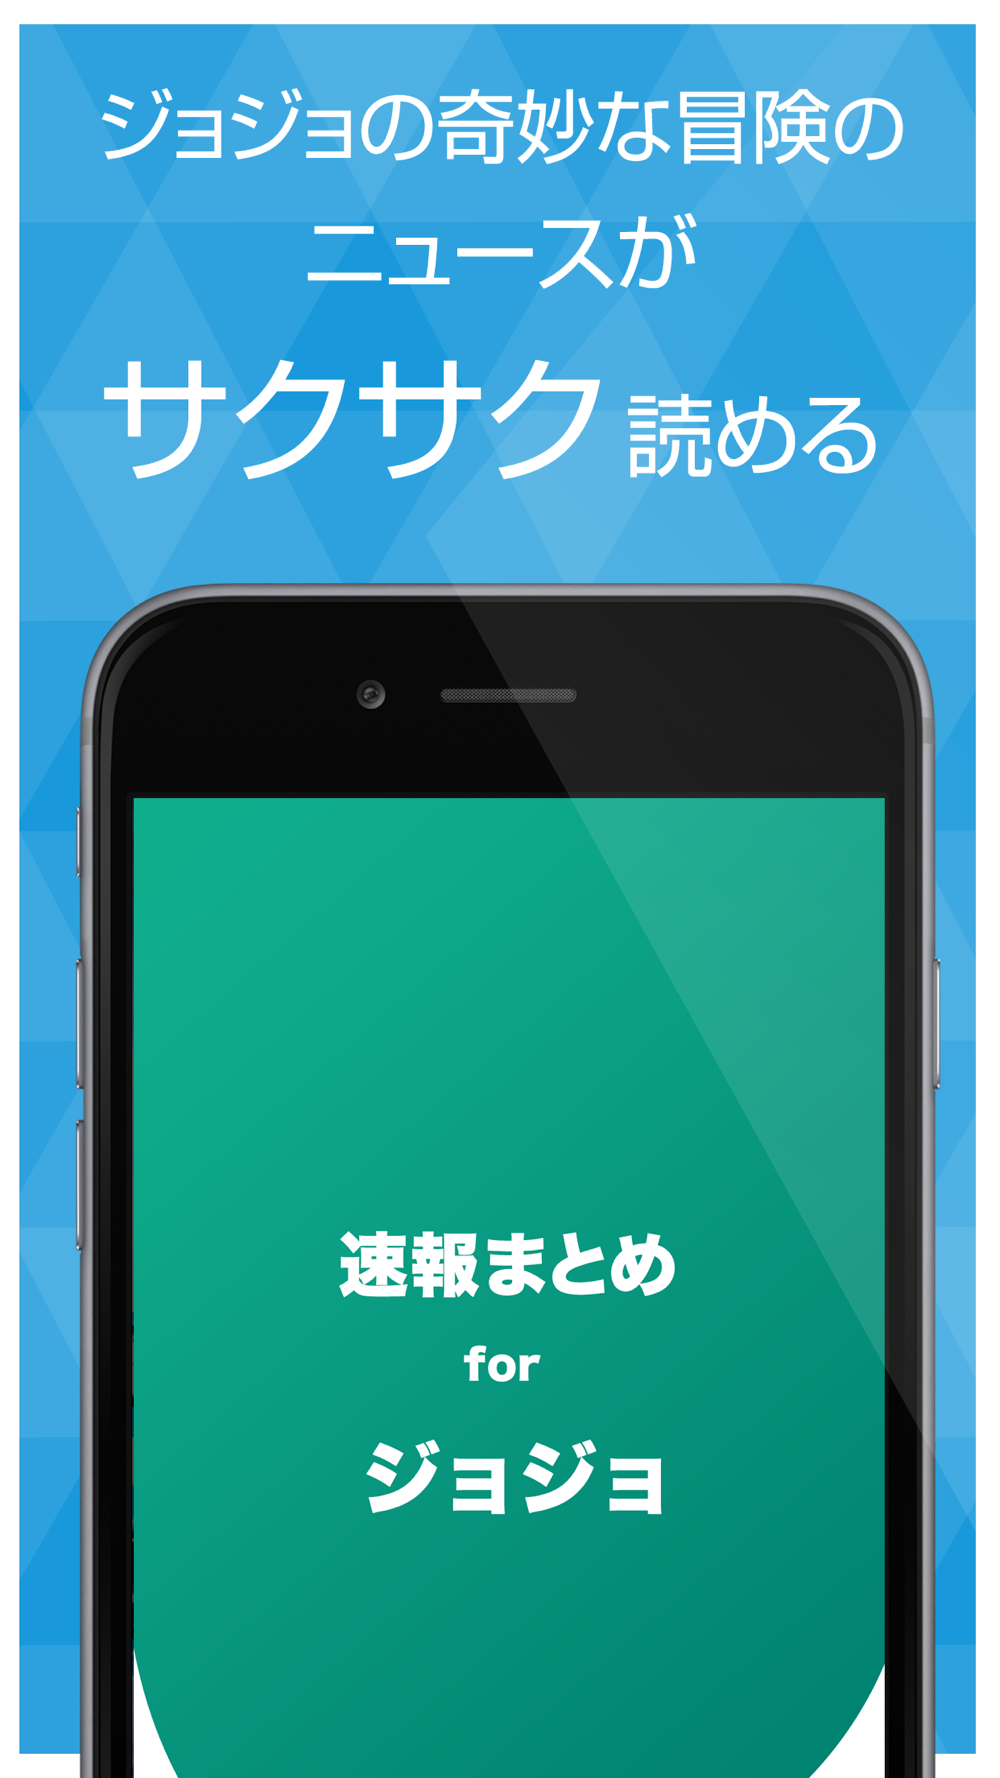 ニュースまとめ速報 For ジョジョの奇妙な冒険 Free Download App For Iphone Steprimo Com